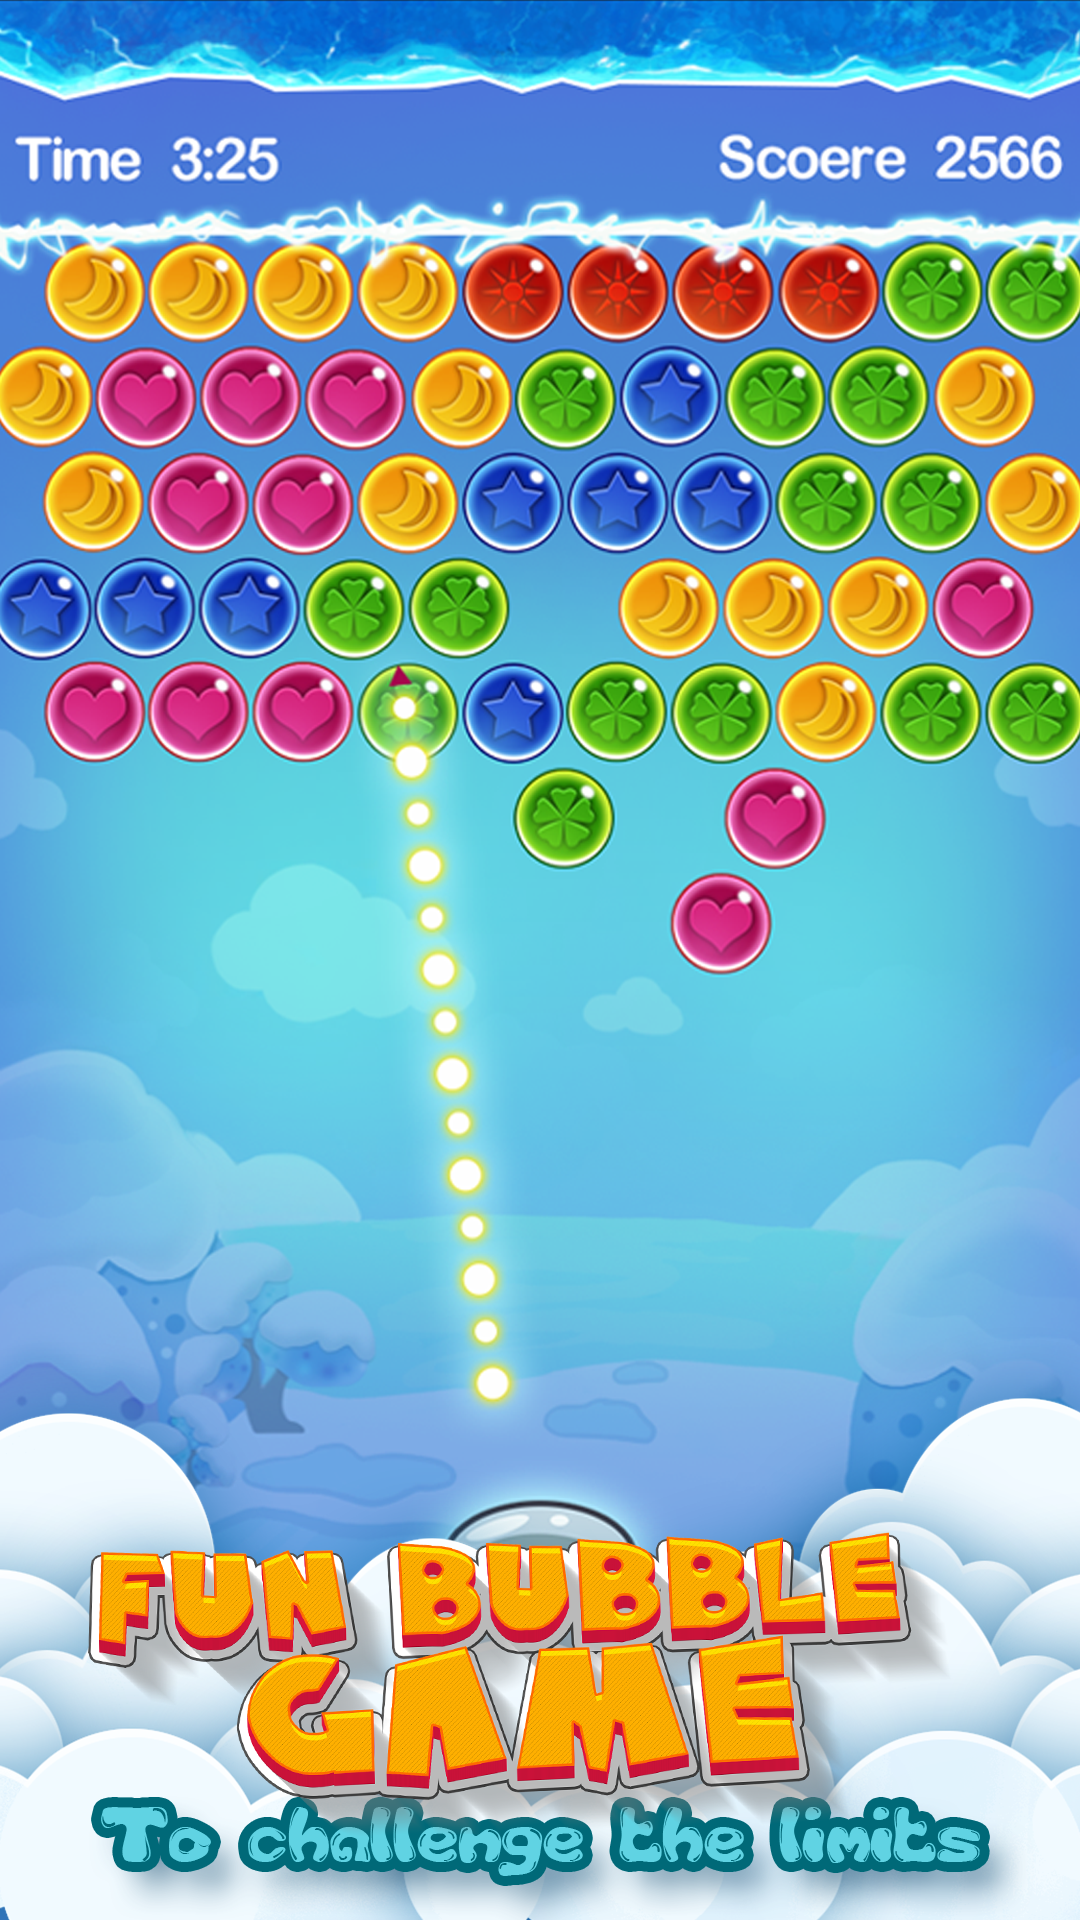 Screenshot 1 of Bubble Shooter - Libreng Sikat na Casual Puzzle Game 4.0